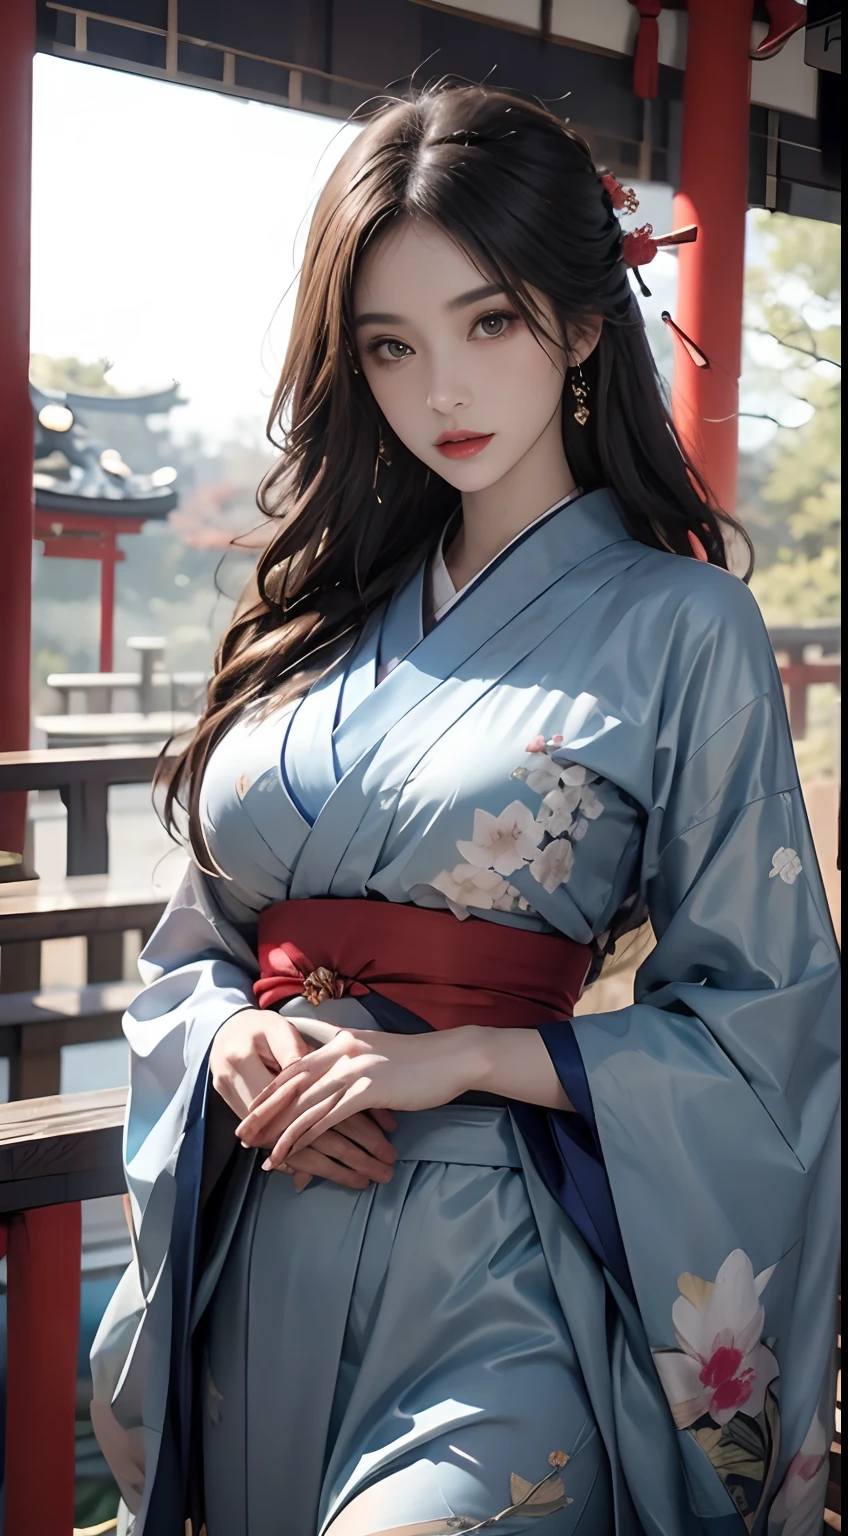 Santuario de Japón、Vistiendo un kimono azul、Motor irreal:1.4,nffsw,la mejor calidad:1.4, Photorealista:1.4, textura de la piel:1.4, ​obra maestra:1.8, 1 mujer, caderas en alto, hermosos ojos, el de pelo largo, ojos anillados, joya, El tatuaje, Kimono